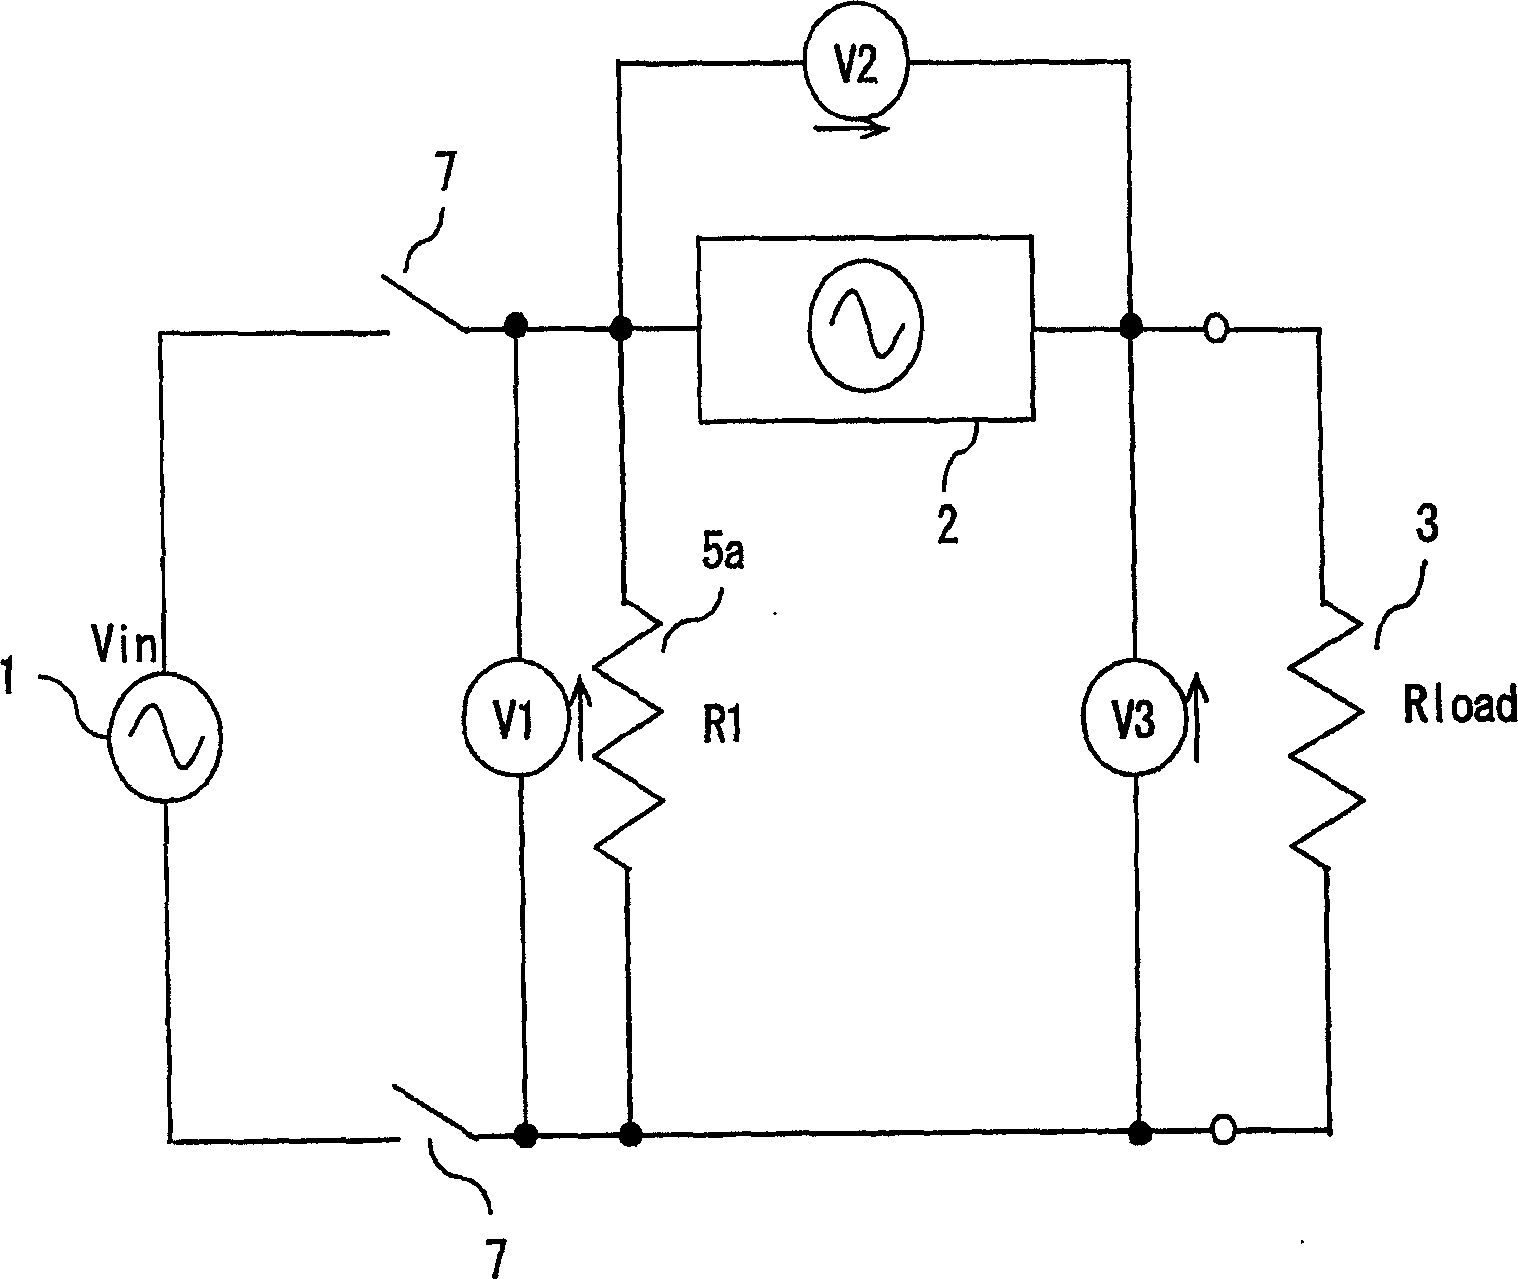 Voltage compensation device